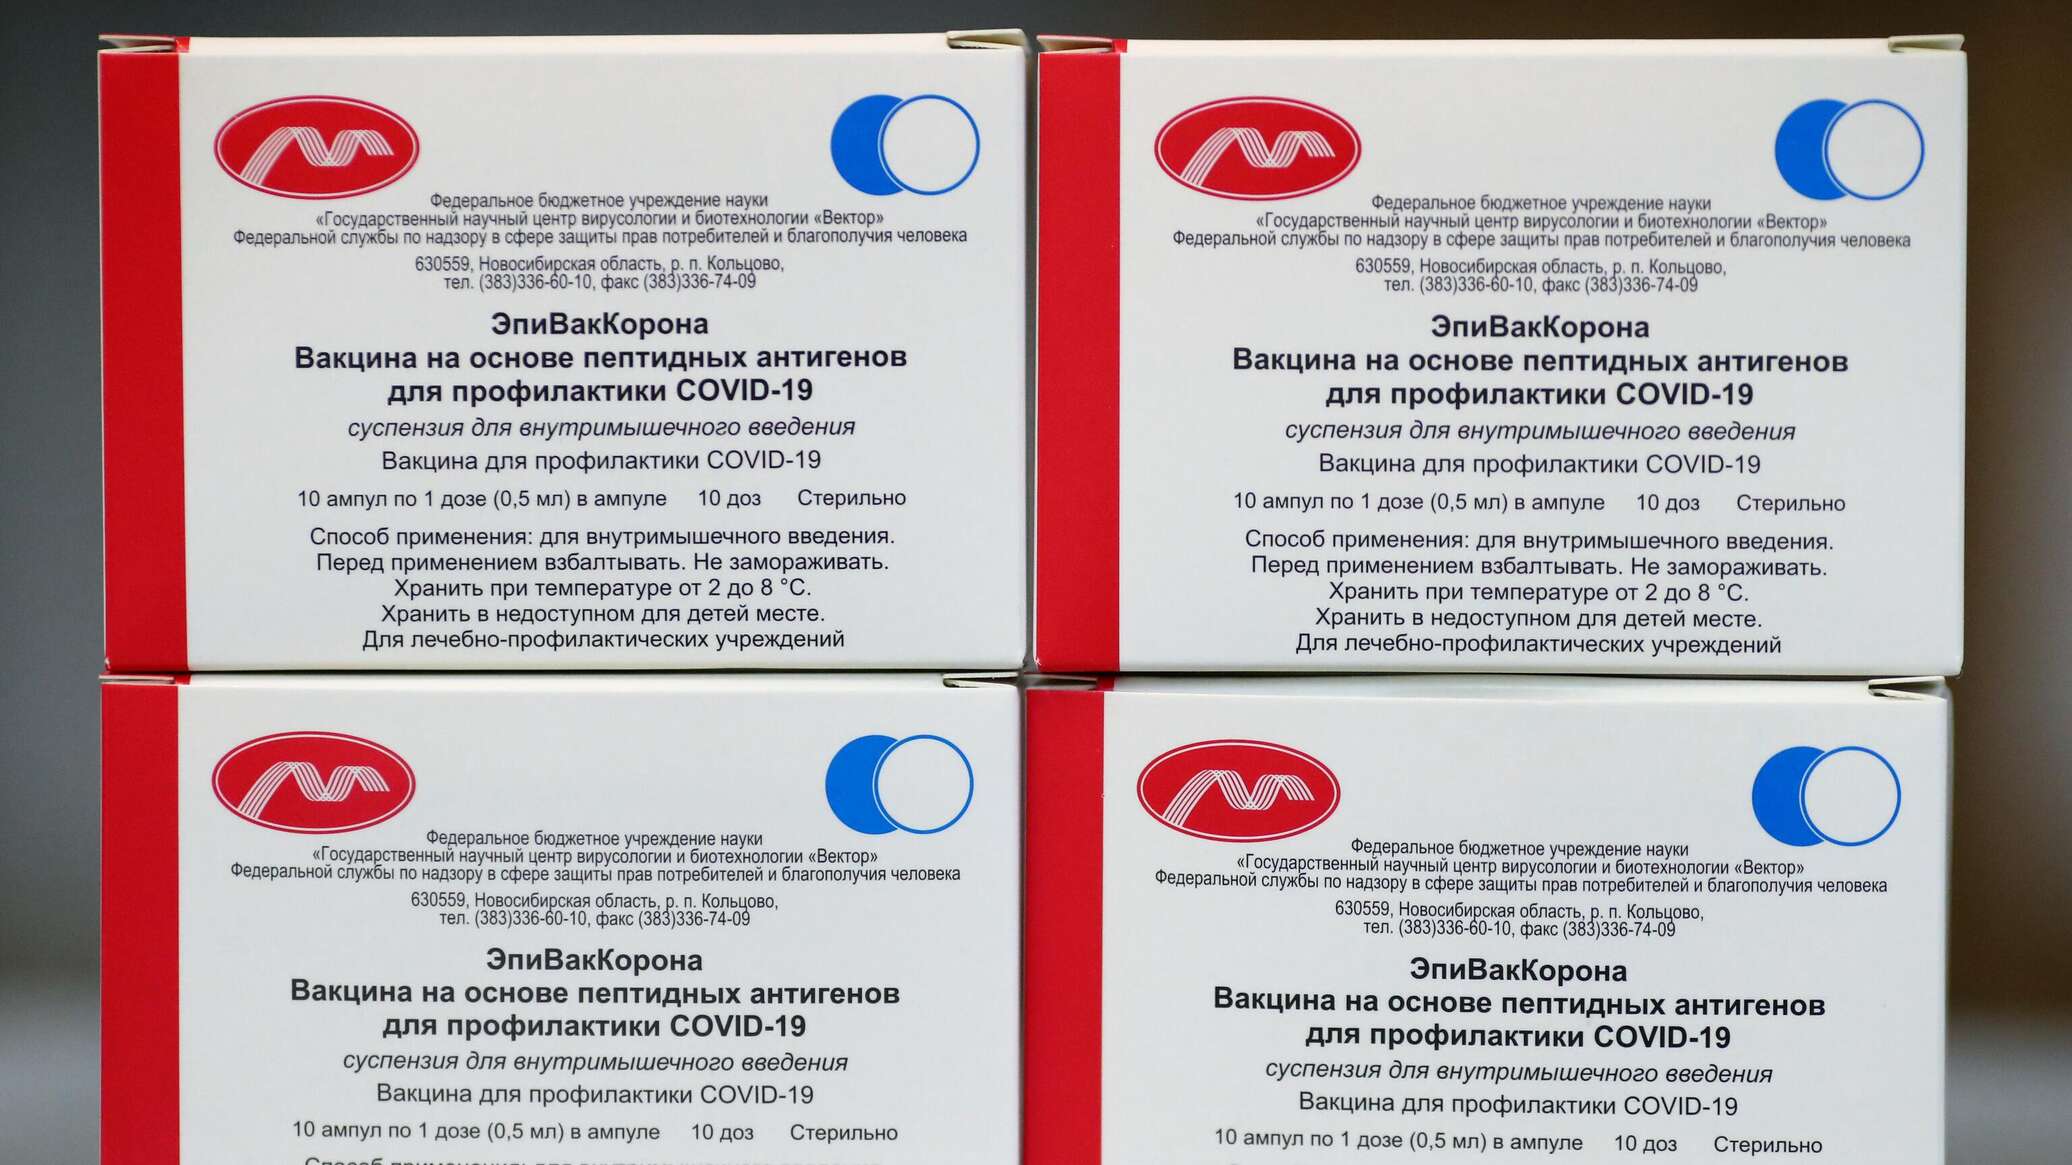 Вакцина вино. Эпиваккорона вакцина. Вакцина на основе пептидных антигенов («эпиваккорона»). Вакцинация от коронавируса вакцины. Производители вакцины от коронавируса в России.